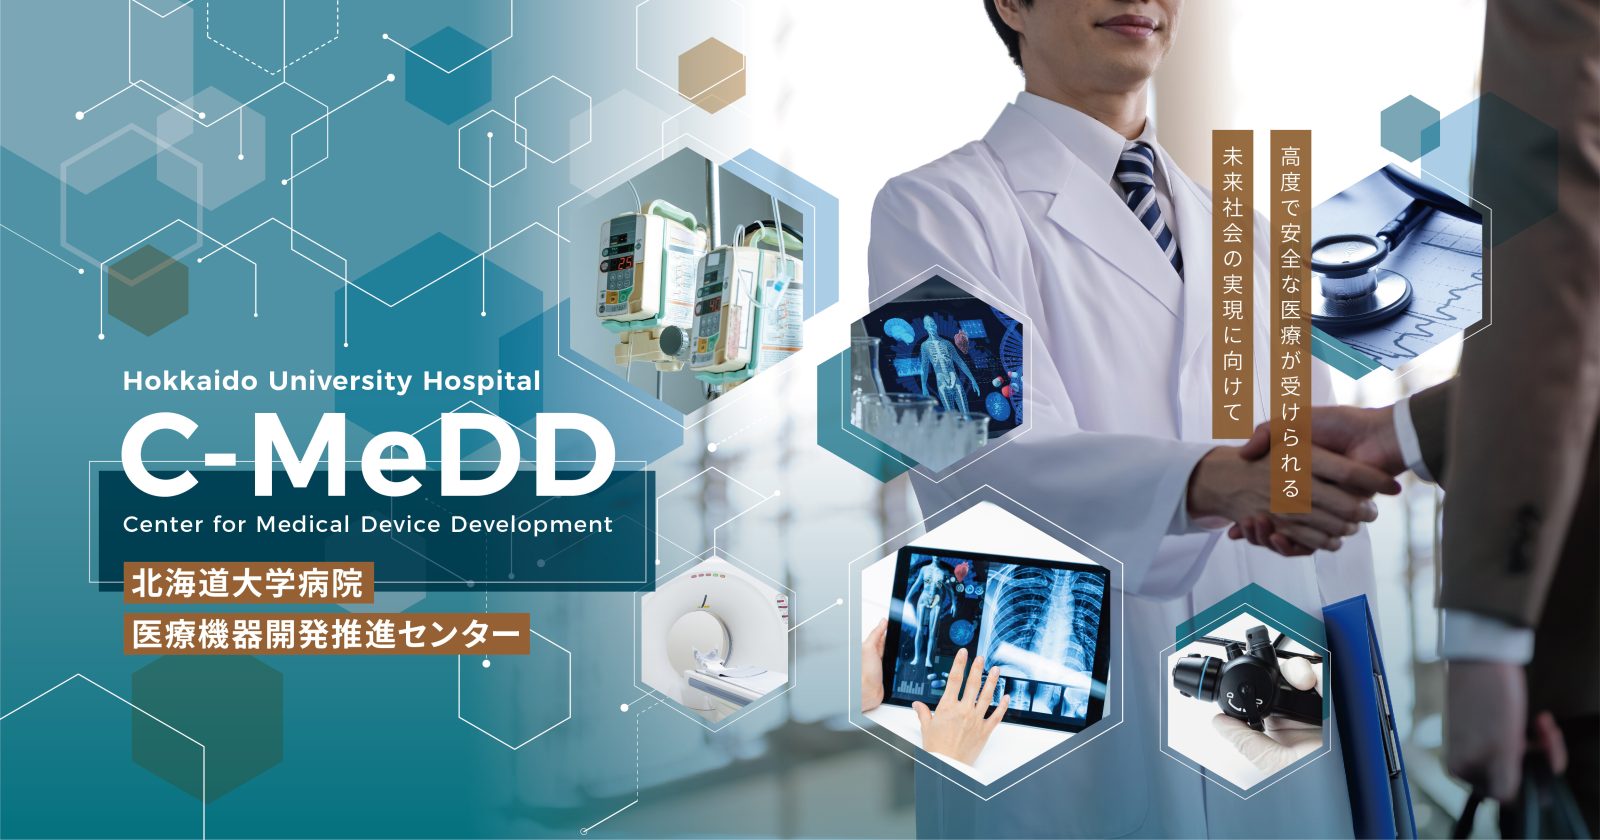 C-MeDD 北海道大学病院  医療機器開発推進センター「高度で安全な医療が受けられる  未来社会の実現に向けて」